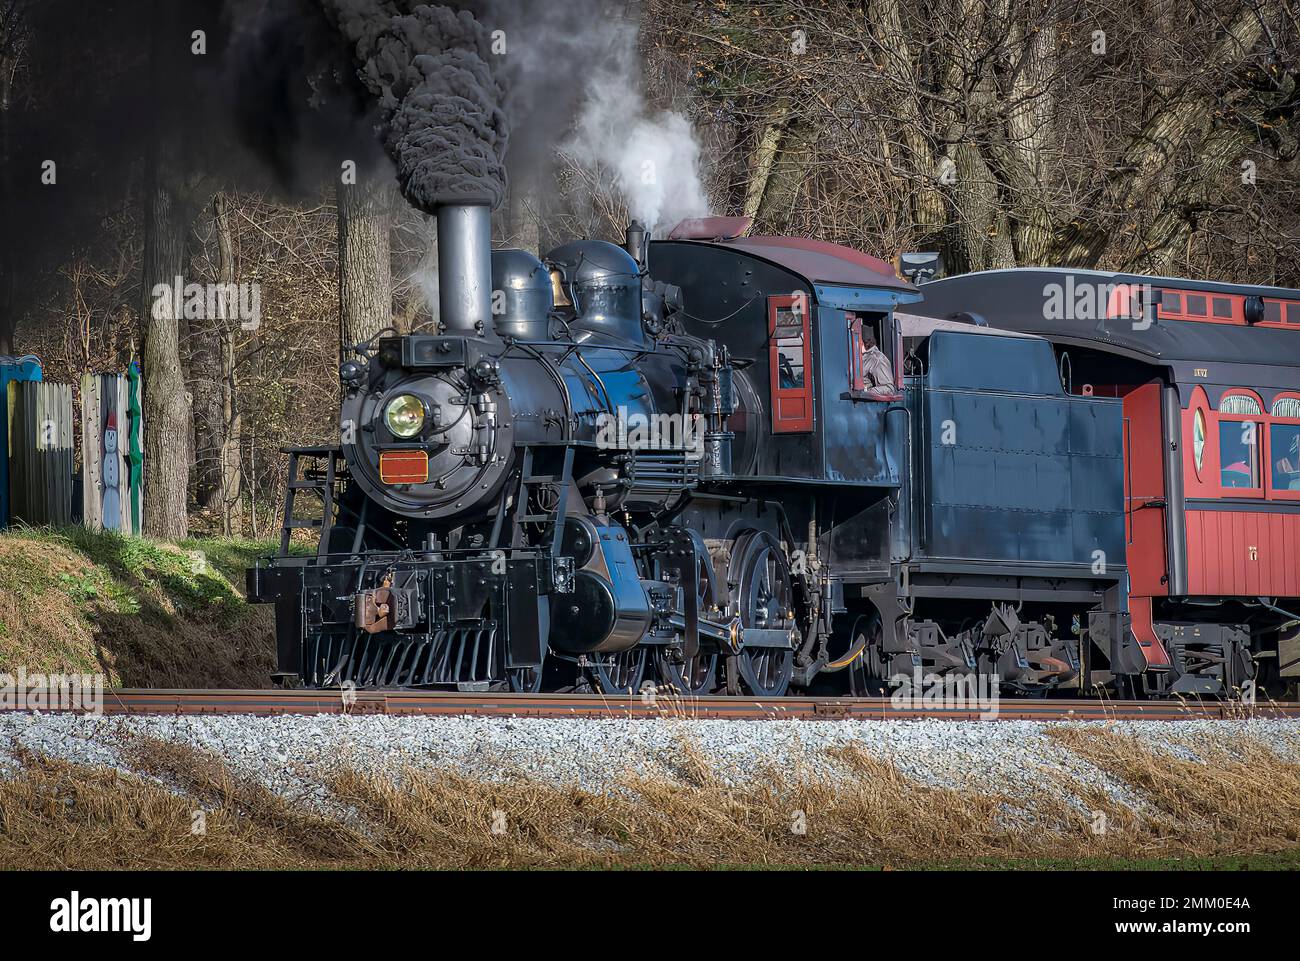 Ronks, Pennsylvanie, 3 décembre 2022 - Vue sur un train de voyageurs à vapeur classique, qui dégage beaucoup de fumée et de vapeur, tout en voyageant à la campagne le jour de l'automne Banque D'Images